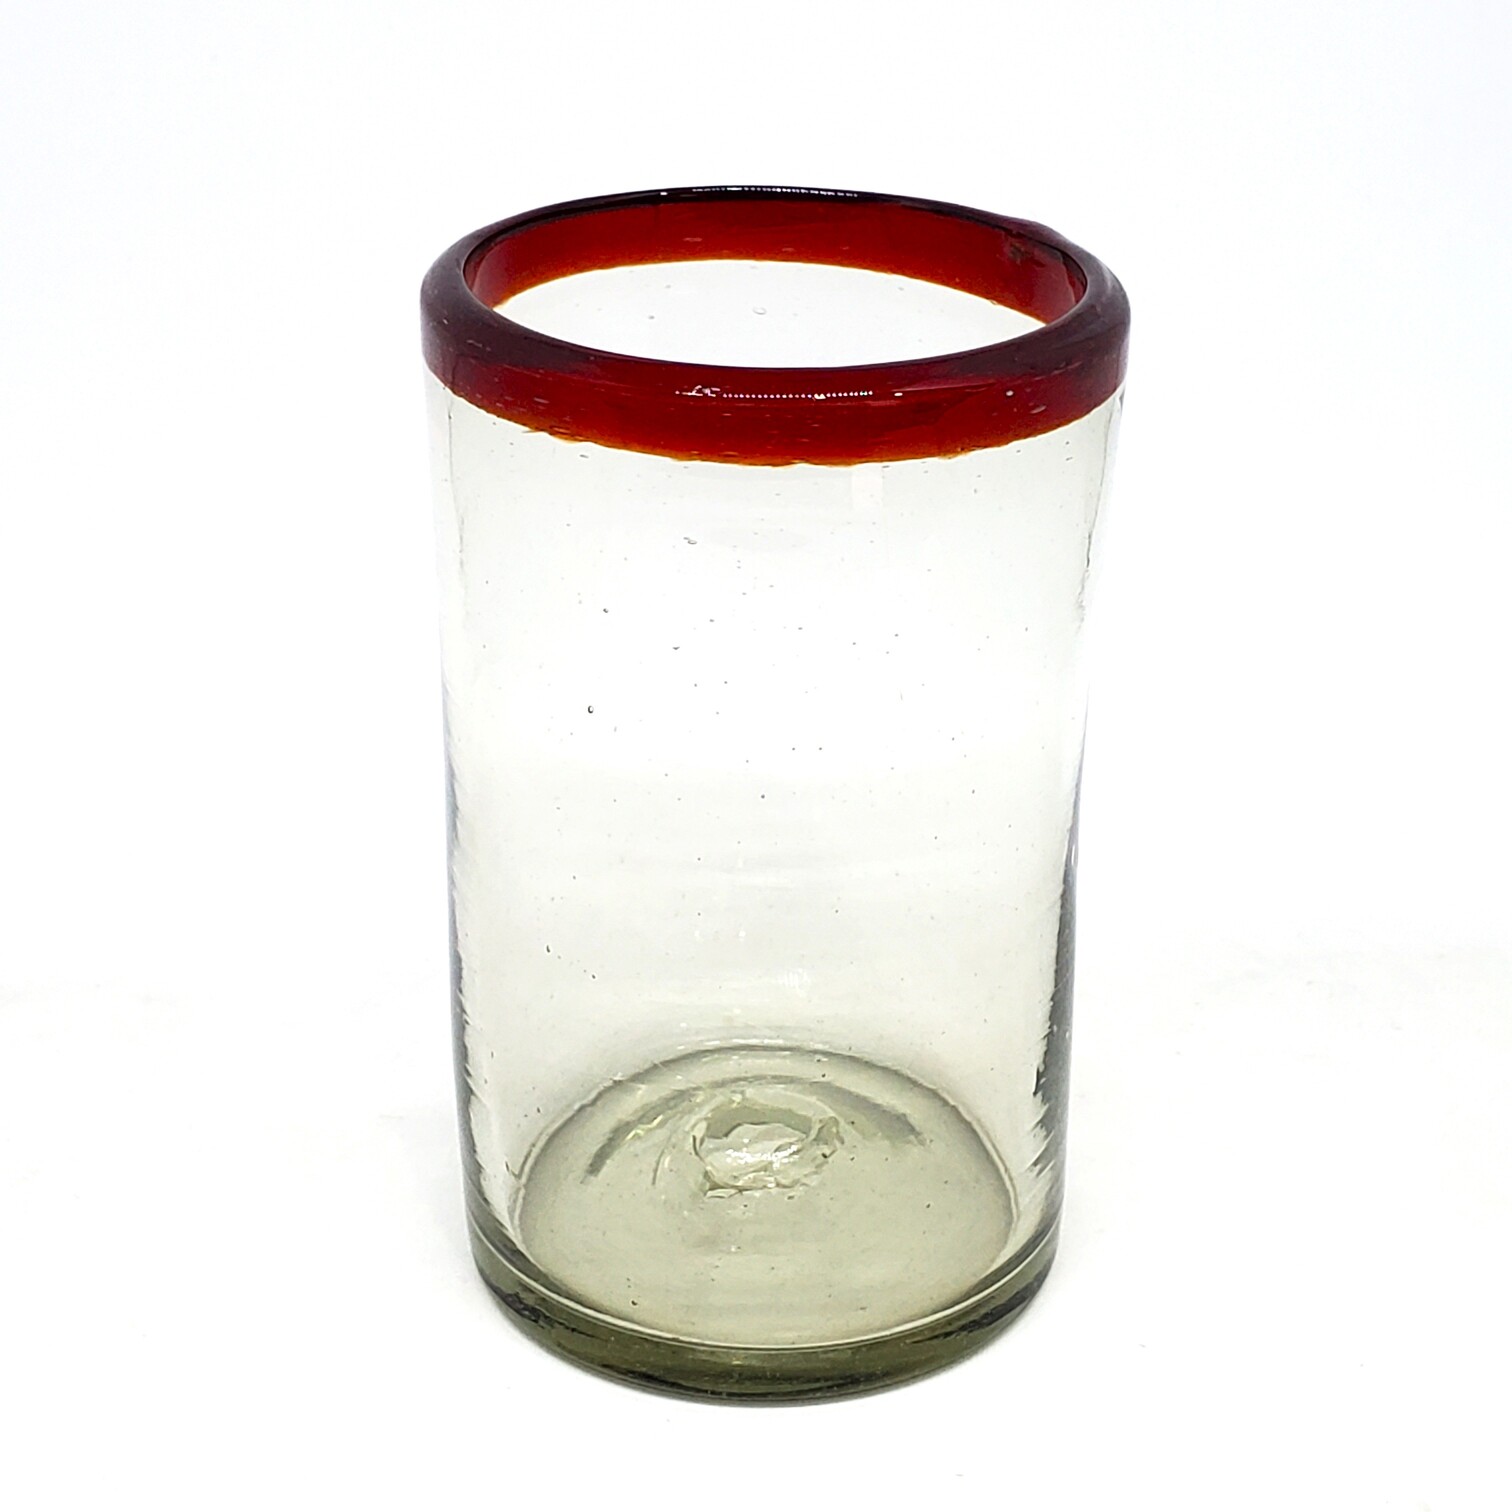 Ofertas / Juego de 6 vasos grandes con borde rojo rubí / Éstos artesanales vasos le darán un toque clásico a su bebida favorita.